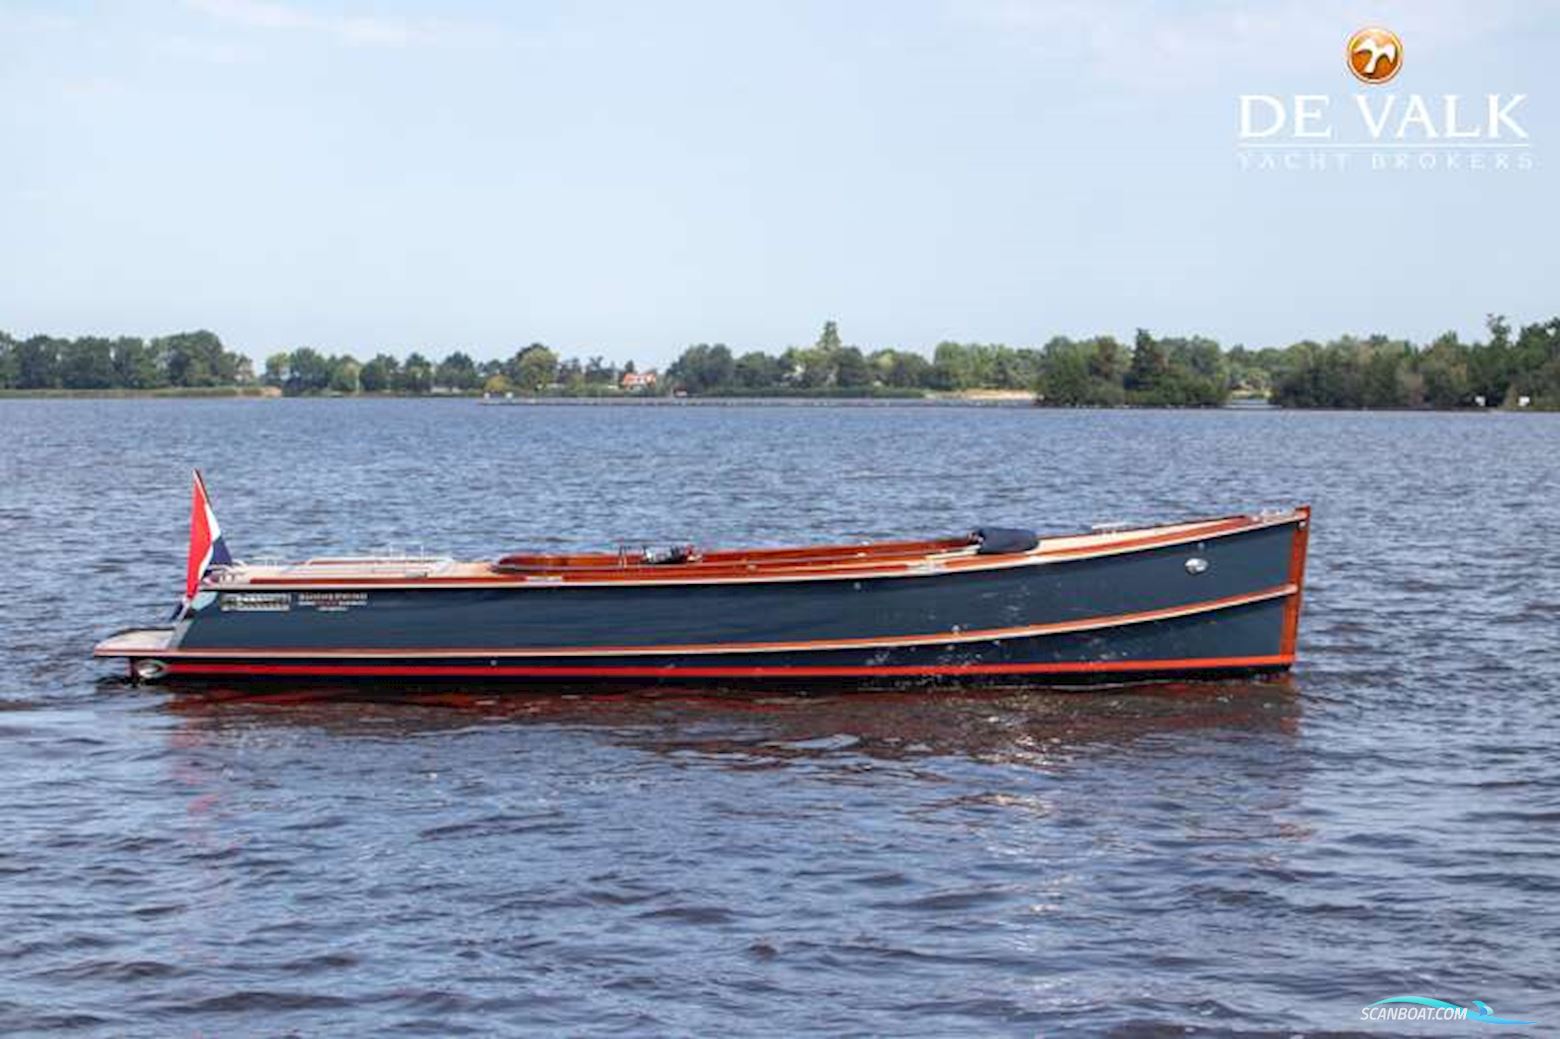 Brandaris Barkas 900 Motorbåd 2020, med Yanmar motor, Holland